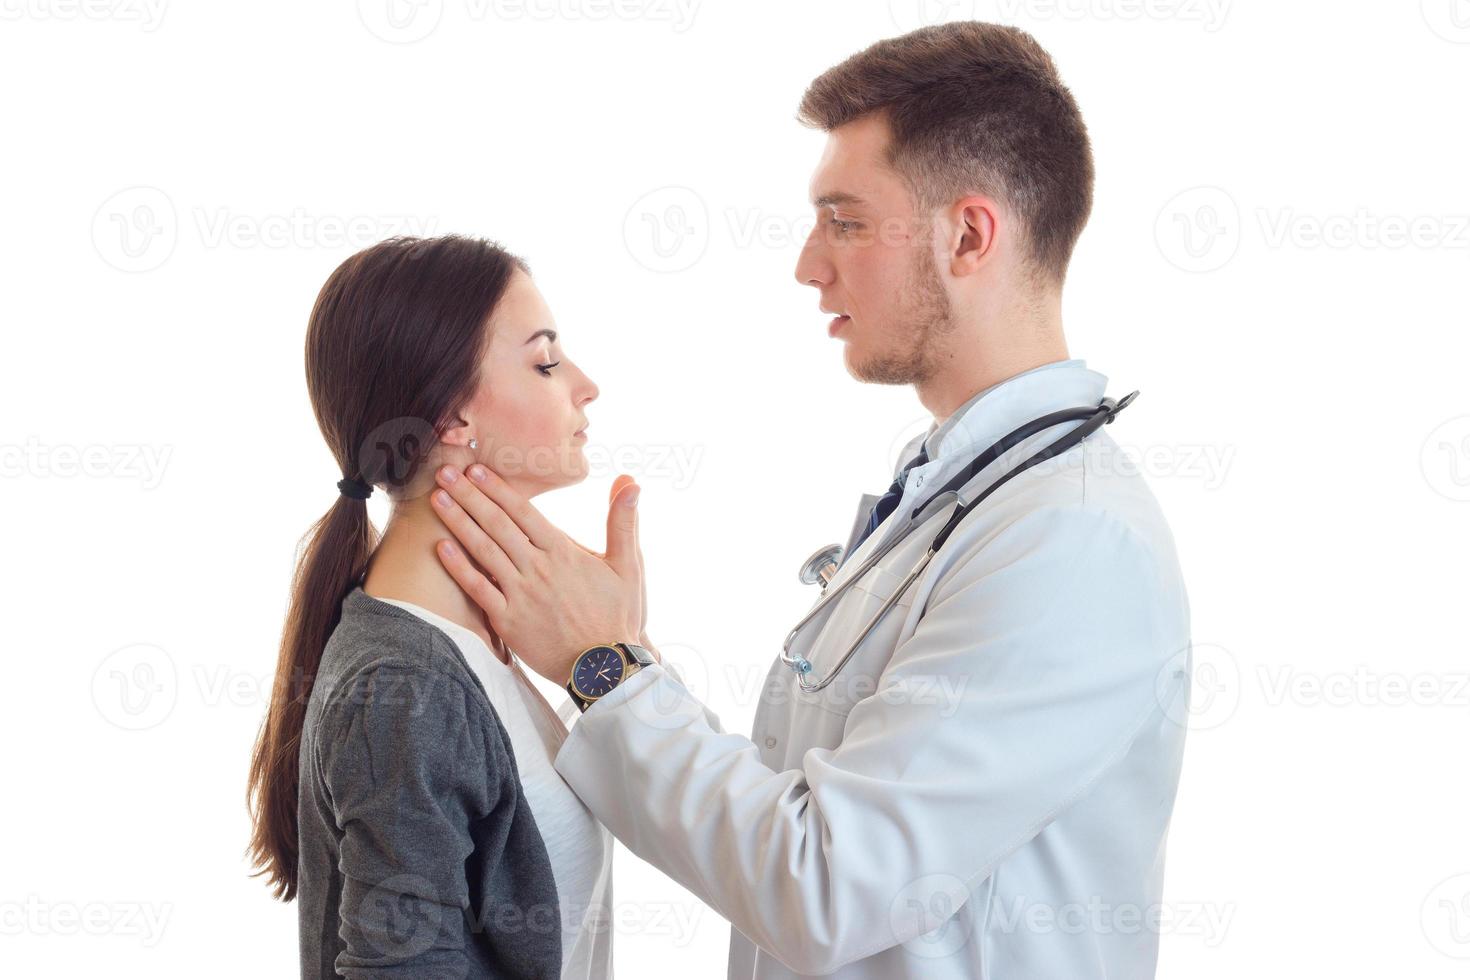 le médecin regarde la gorge de la fille et vérifie ses mains photo